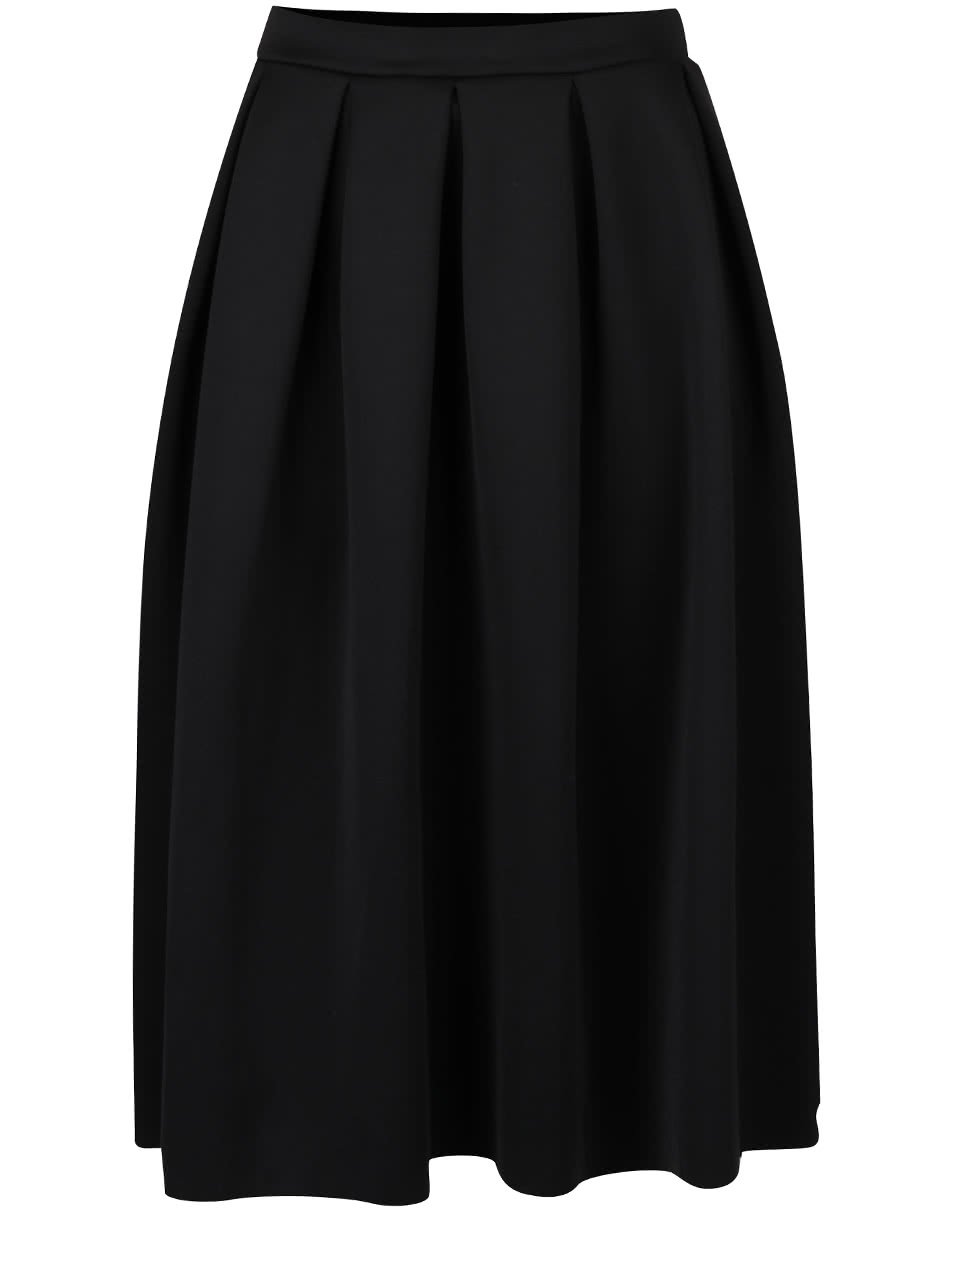 Černá překládaná sukně s pružným pasem Dorothy Perkins